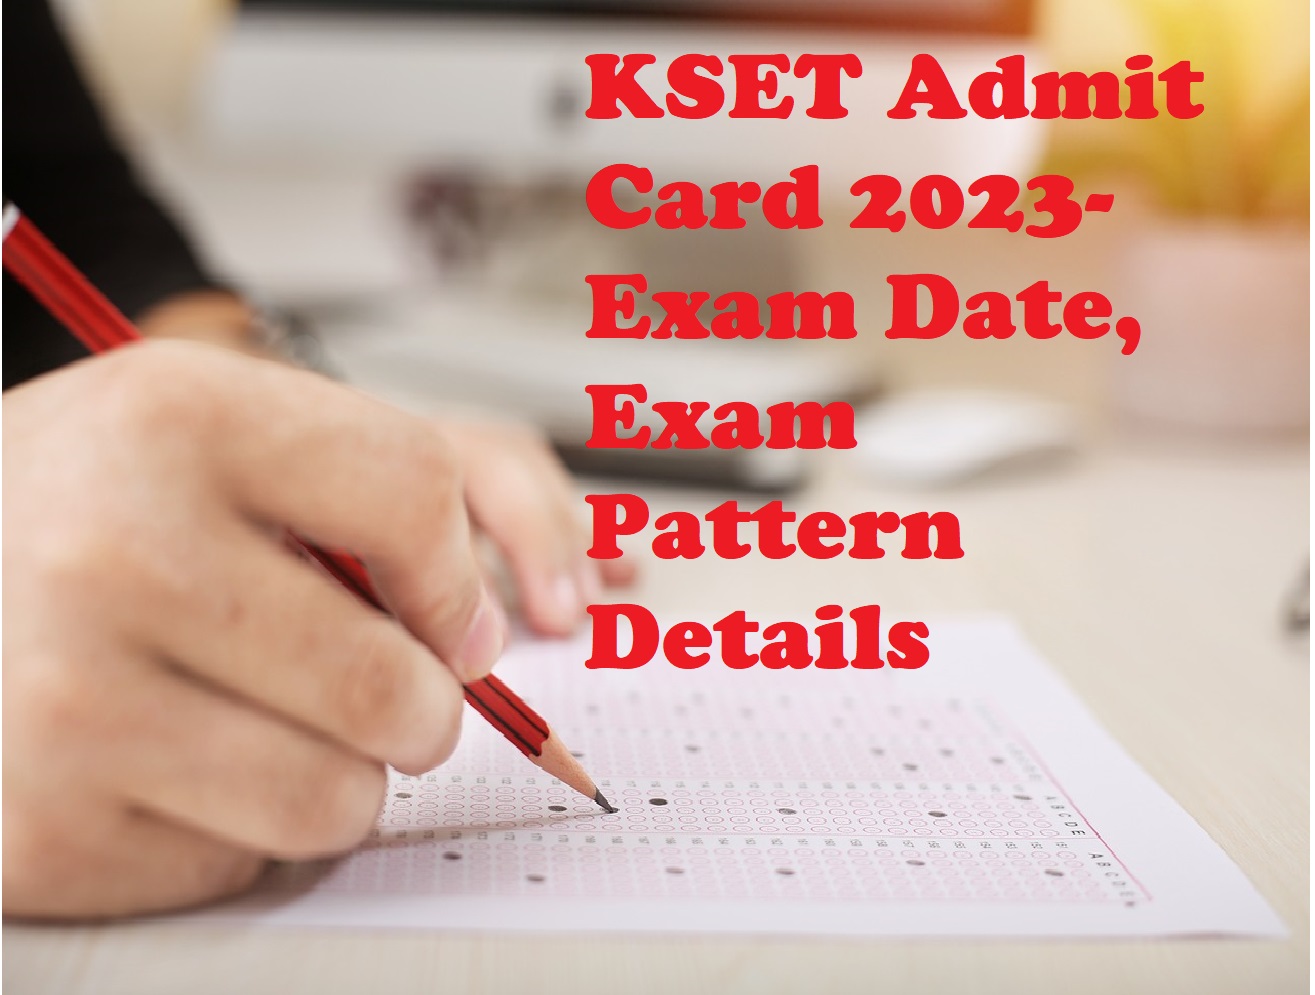 KSET Admit Card